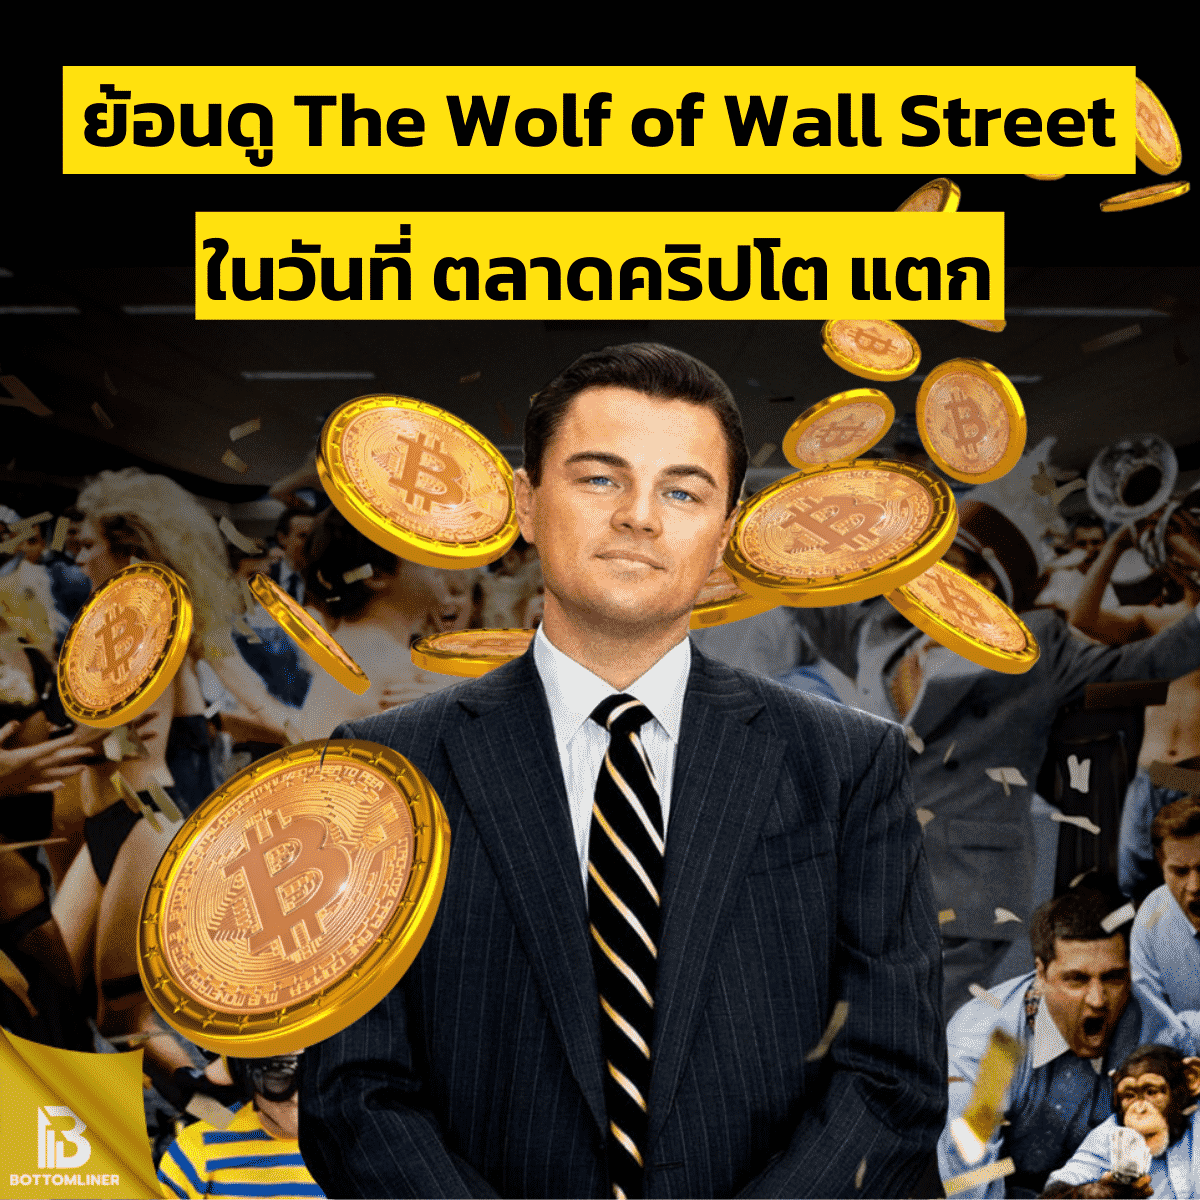 ย้อนดู The Wolf of Wall Street ในวันที่ตลาดคริปโตแตก (คนจะรวยช่วยไม่ได้)